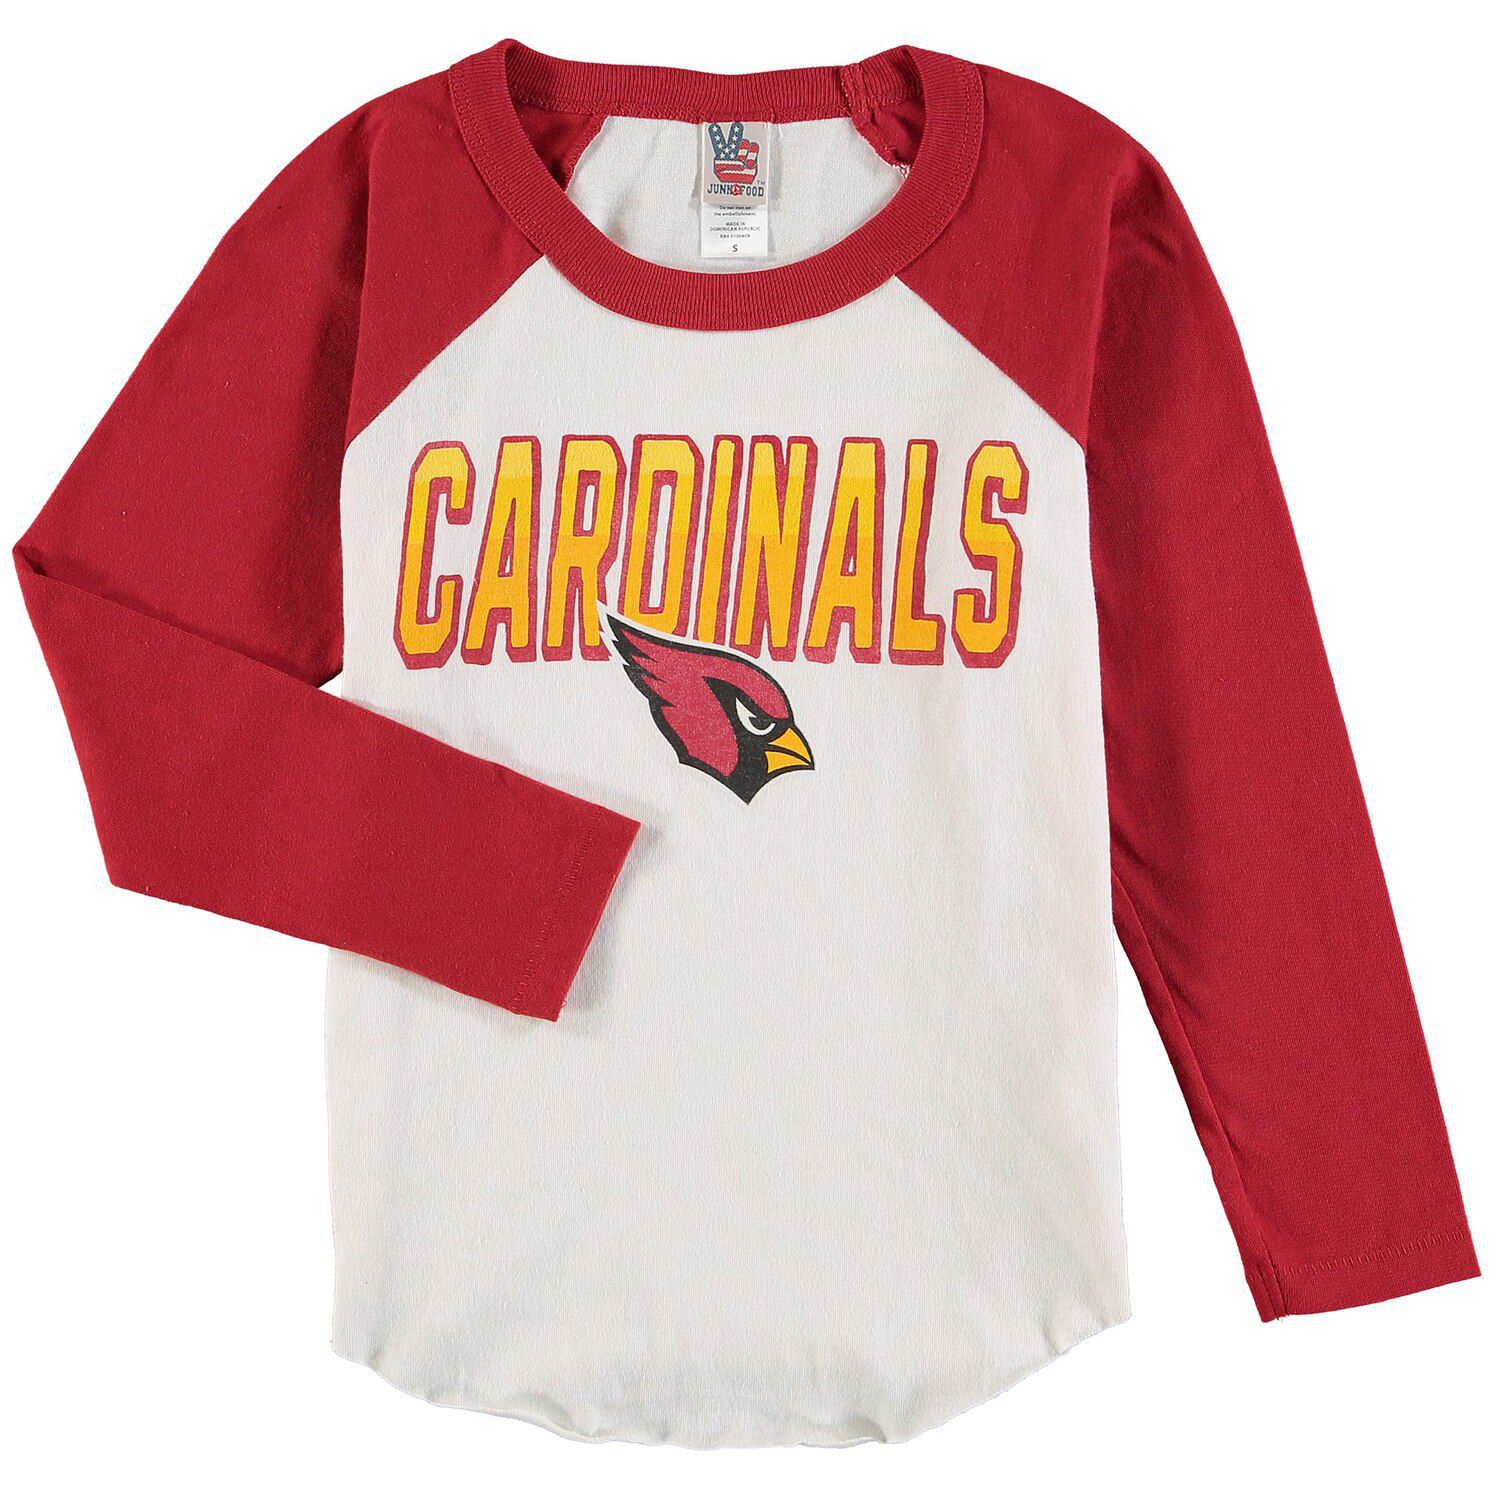 Arizona Cardinals kids T shirt